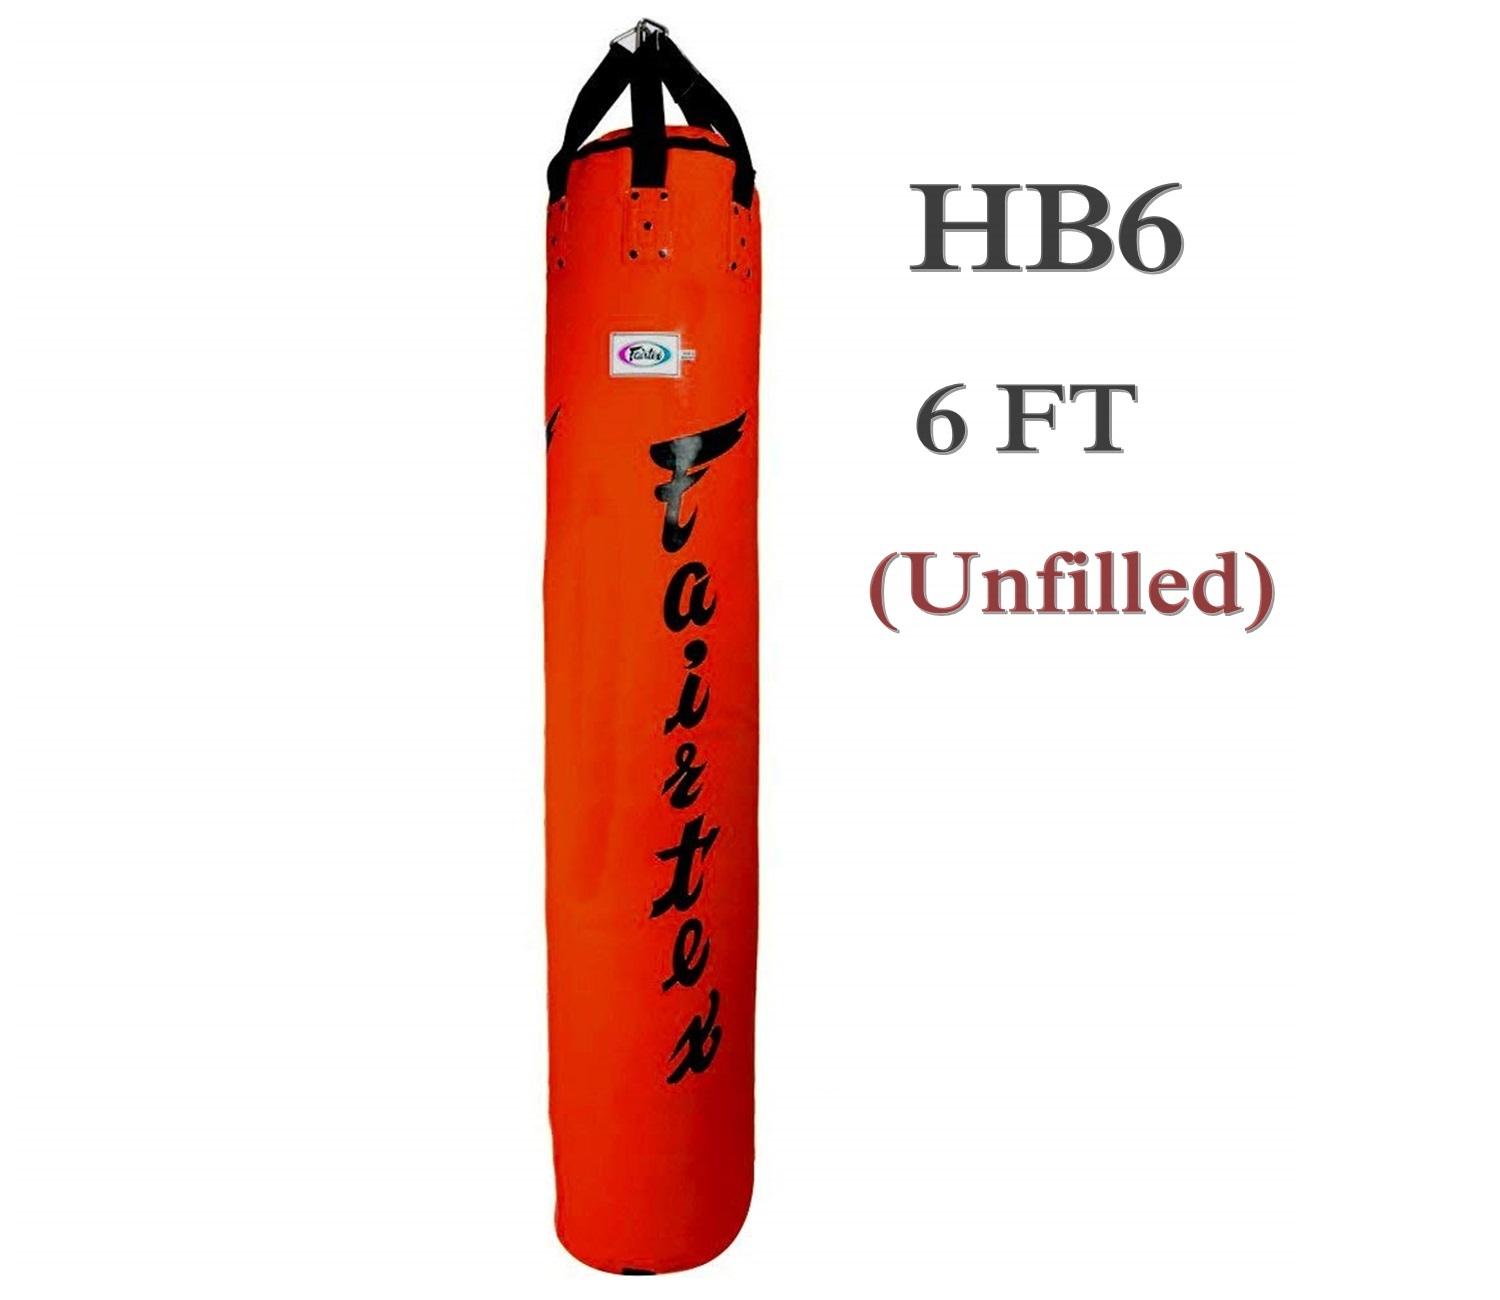 กระสอบทรายทรงกล้วย แฟร์แท็กซ์ HB6 สีแดง 6 ฟุต( ขายแบบไม่บรรจุ) Fairtex Heavy Bag HB6 Red 6 Feets Banana Training MMA Kickboxing (Un-filled)